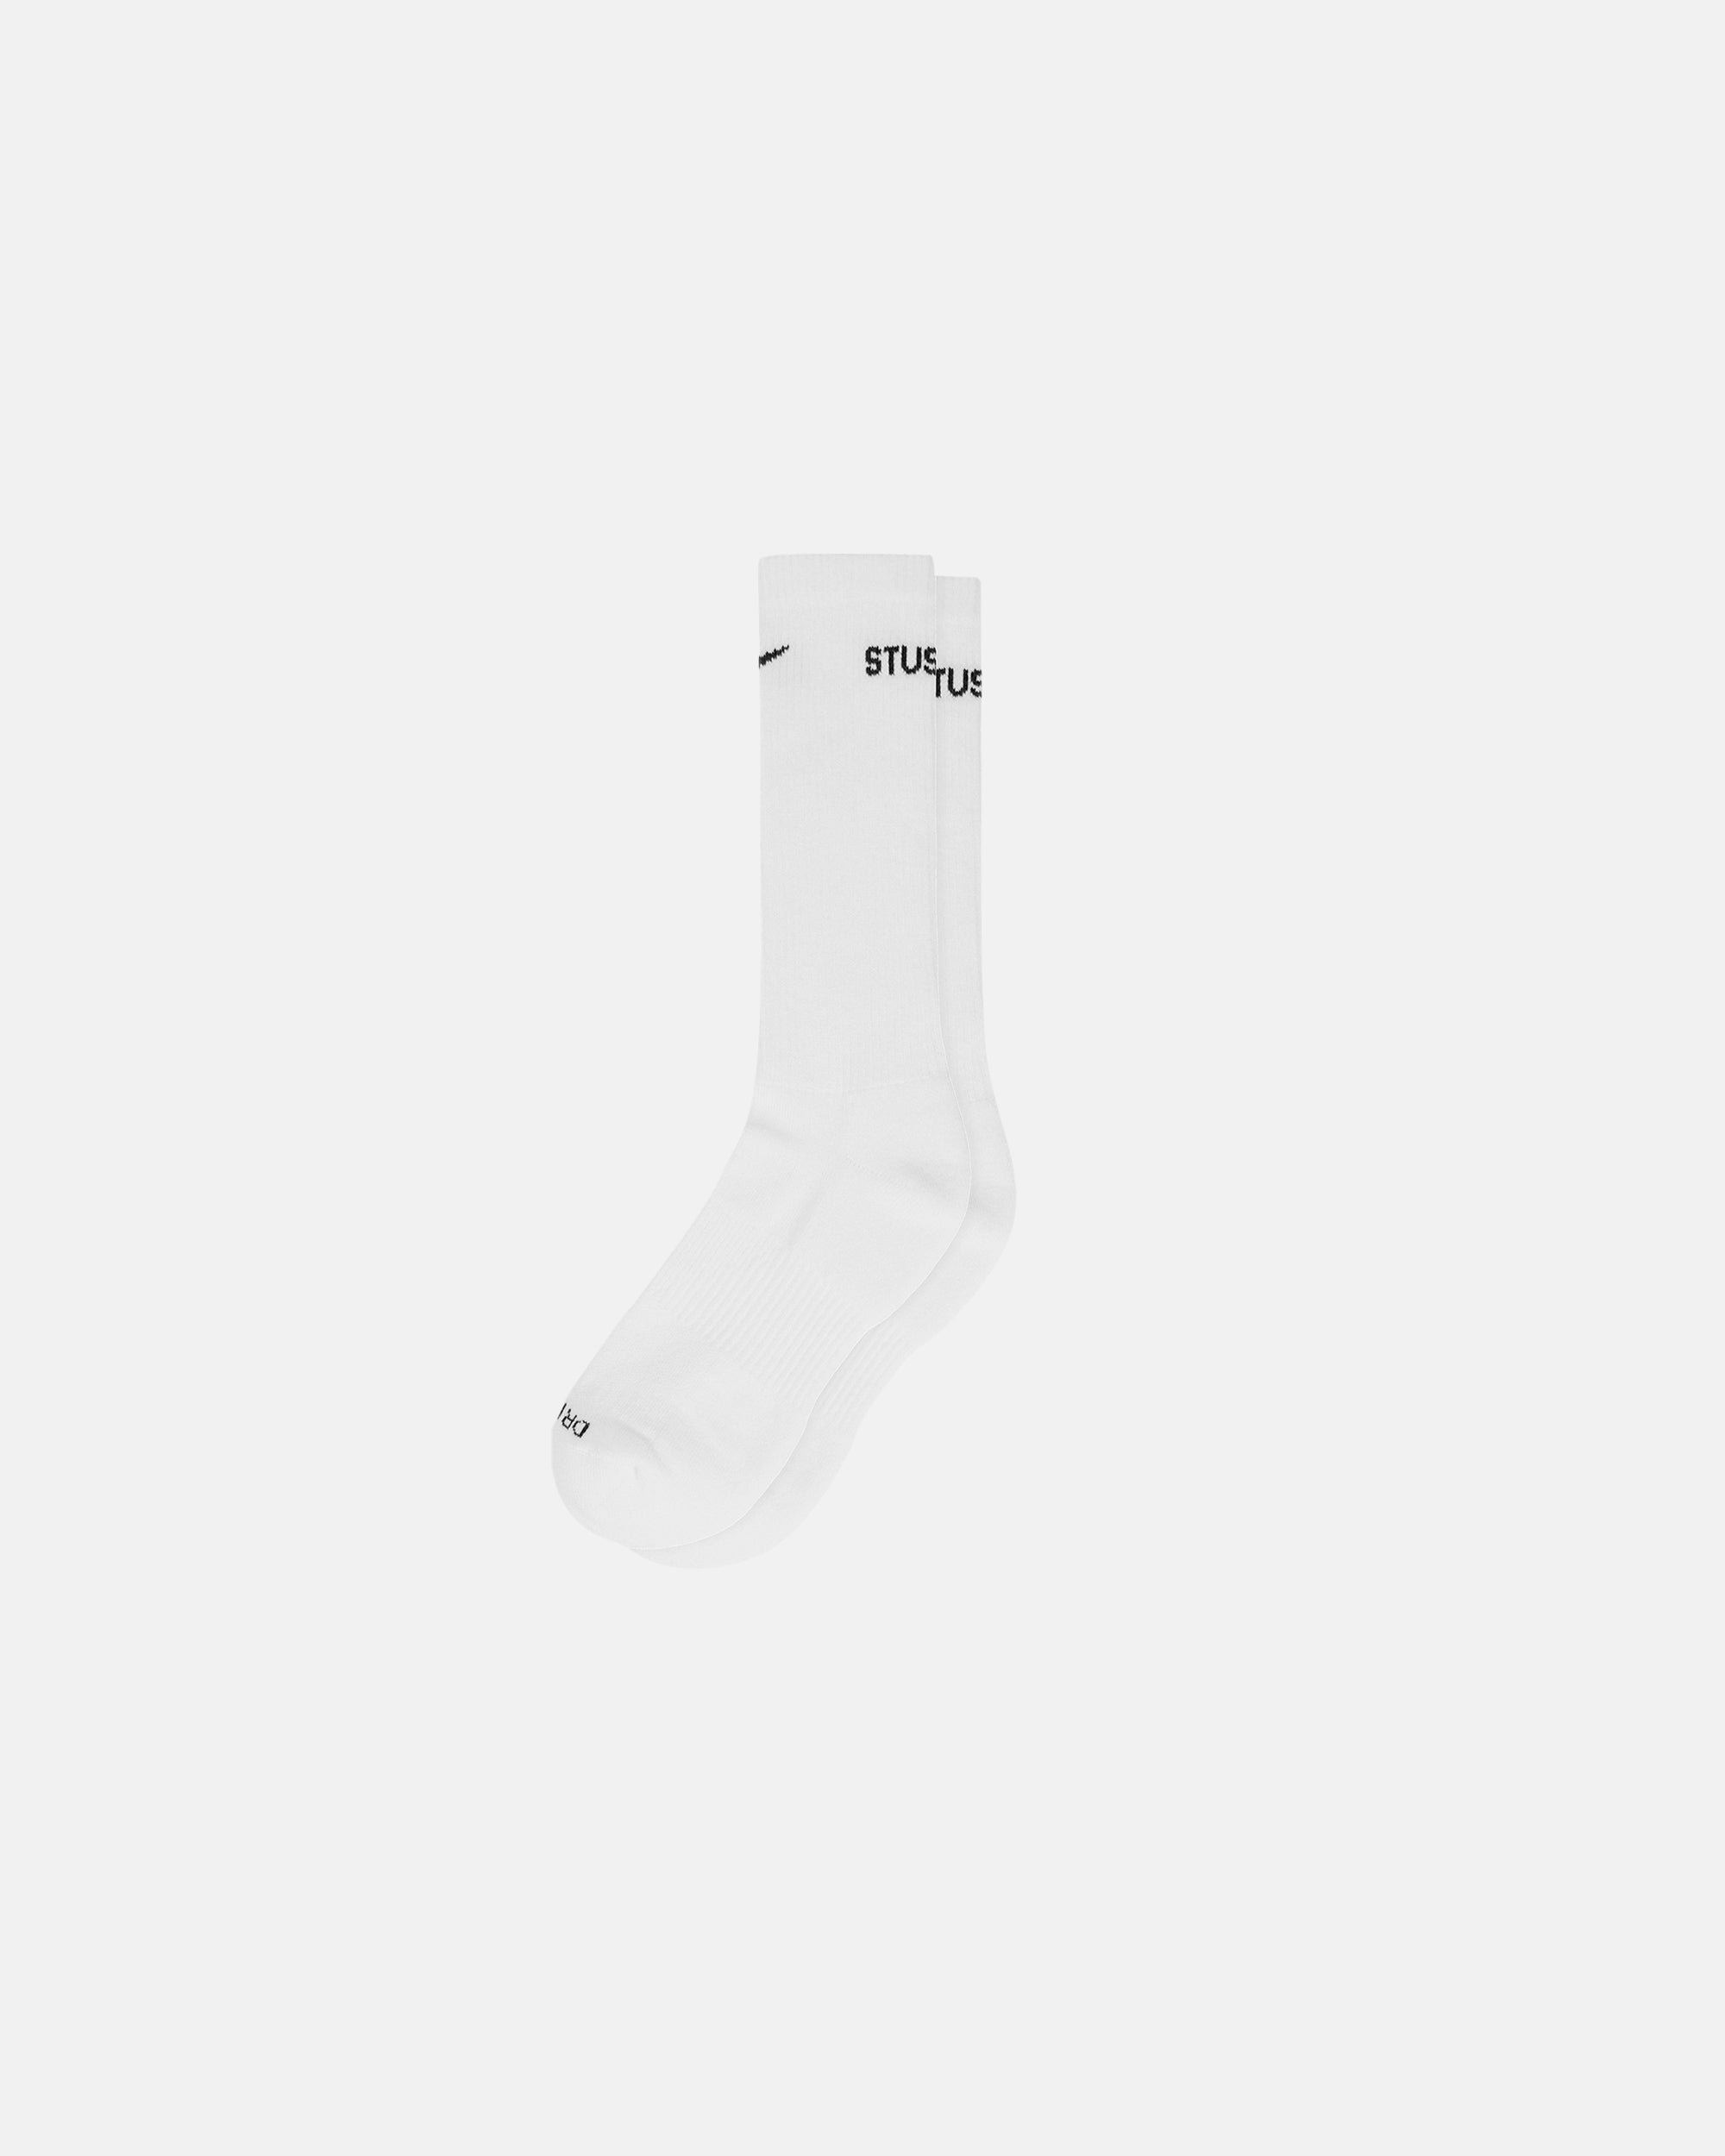 Stüssy & Nike Dri-Fit Crew Socks - Unisex Socks & Accessories | Stüssy ...